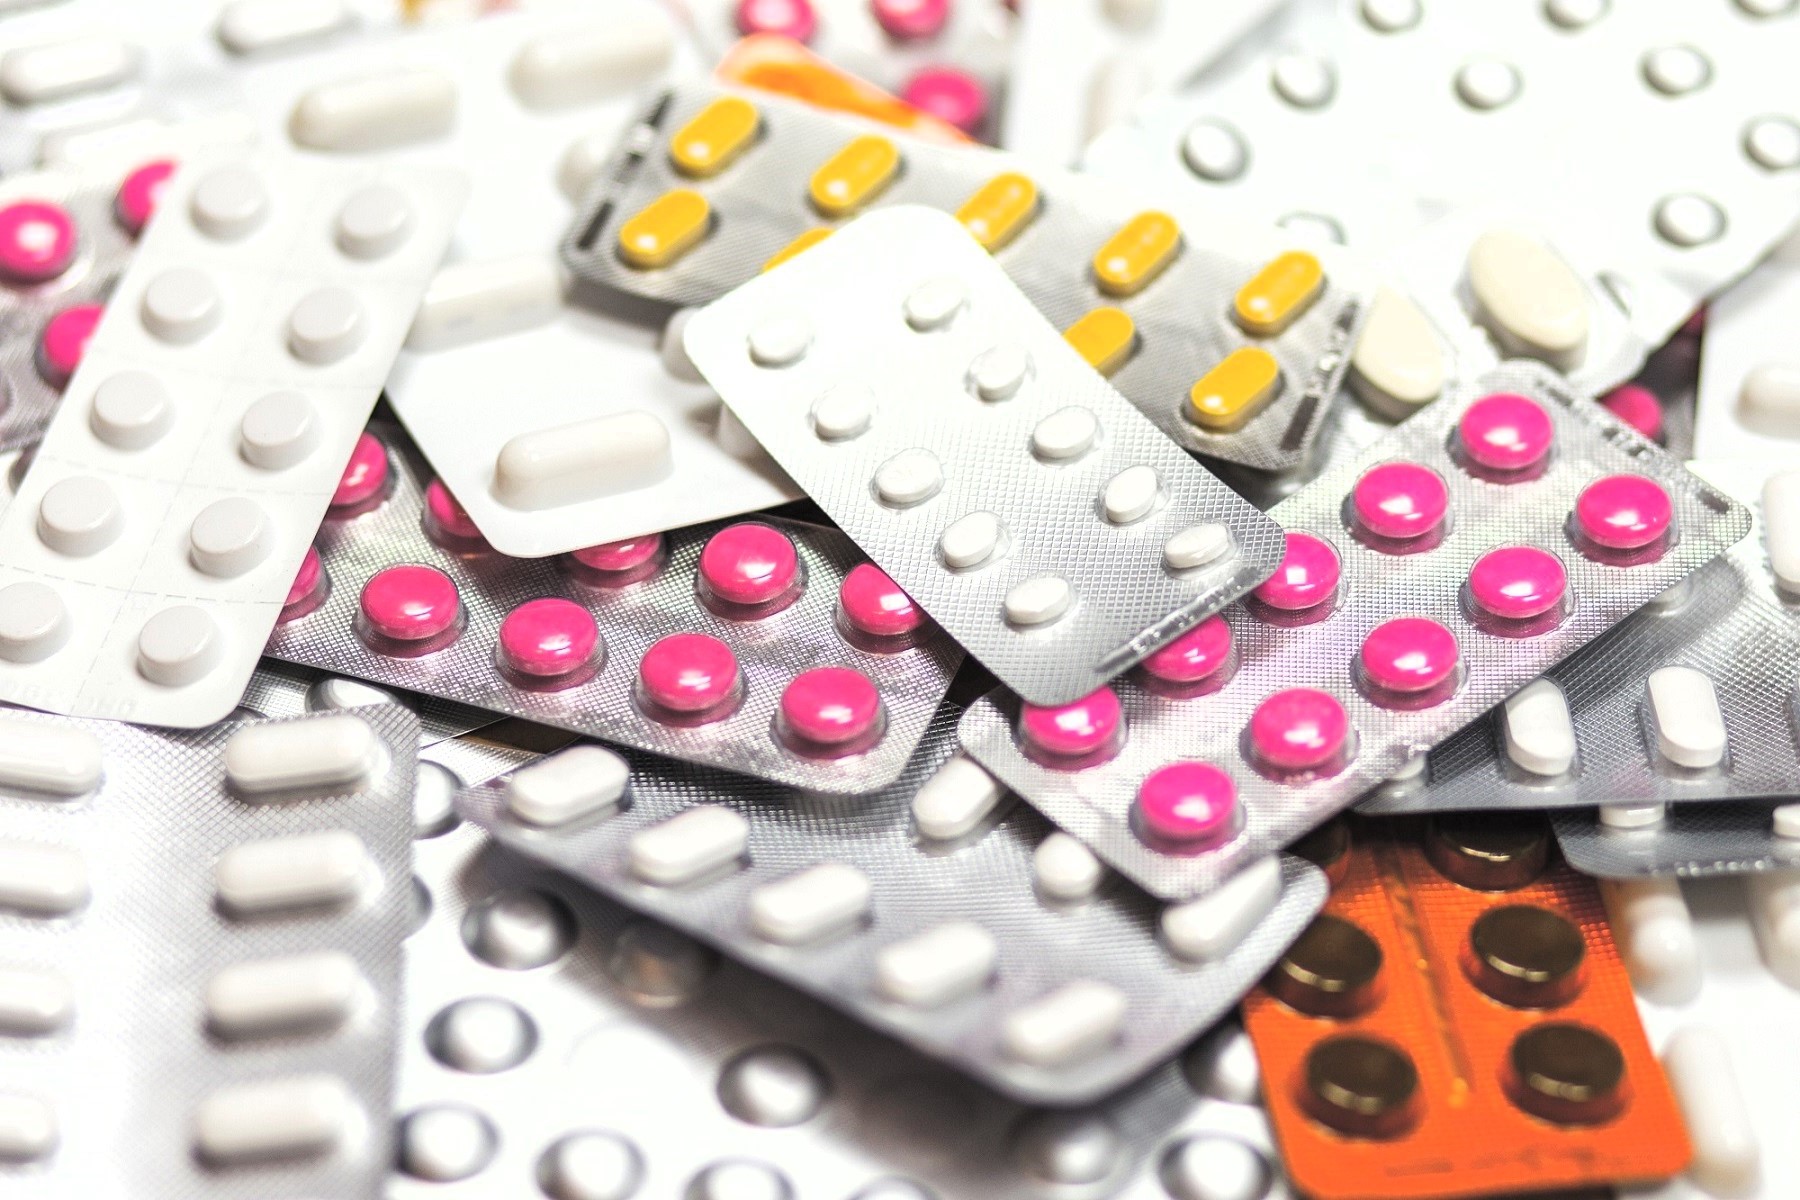 ADEX solicitó al gobierno reemplazar el requisito de estudios clínicos por actividades de farmacovigilancia. La Digemid debe aplicar criterios de riesgo, sostuvo.